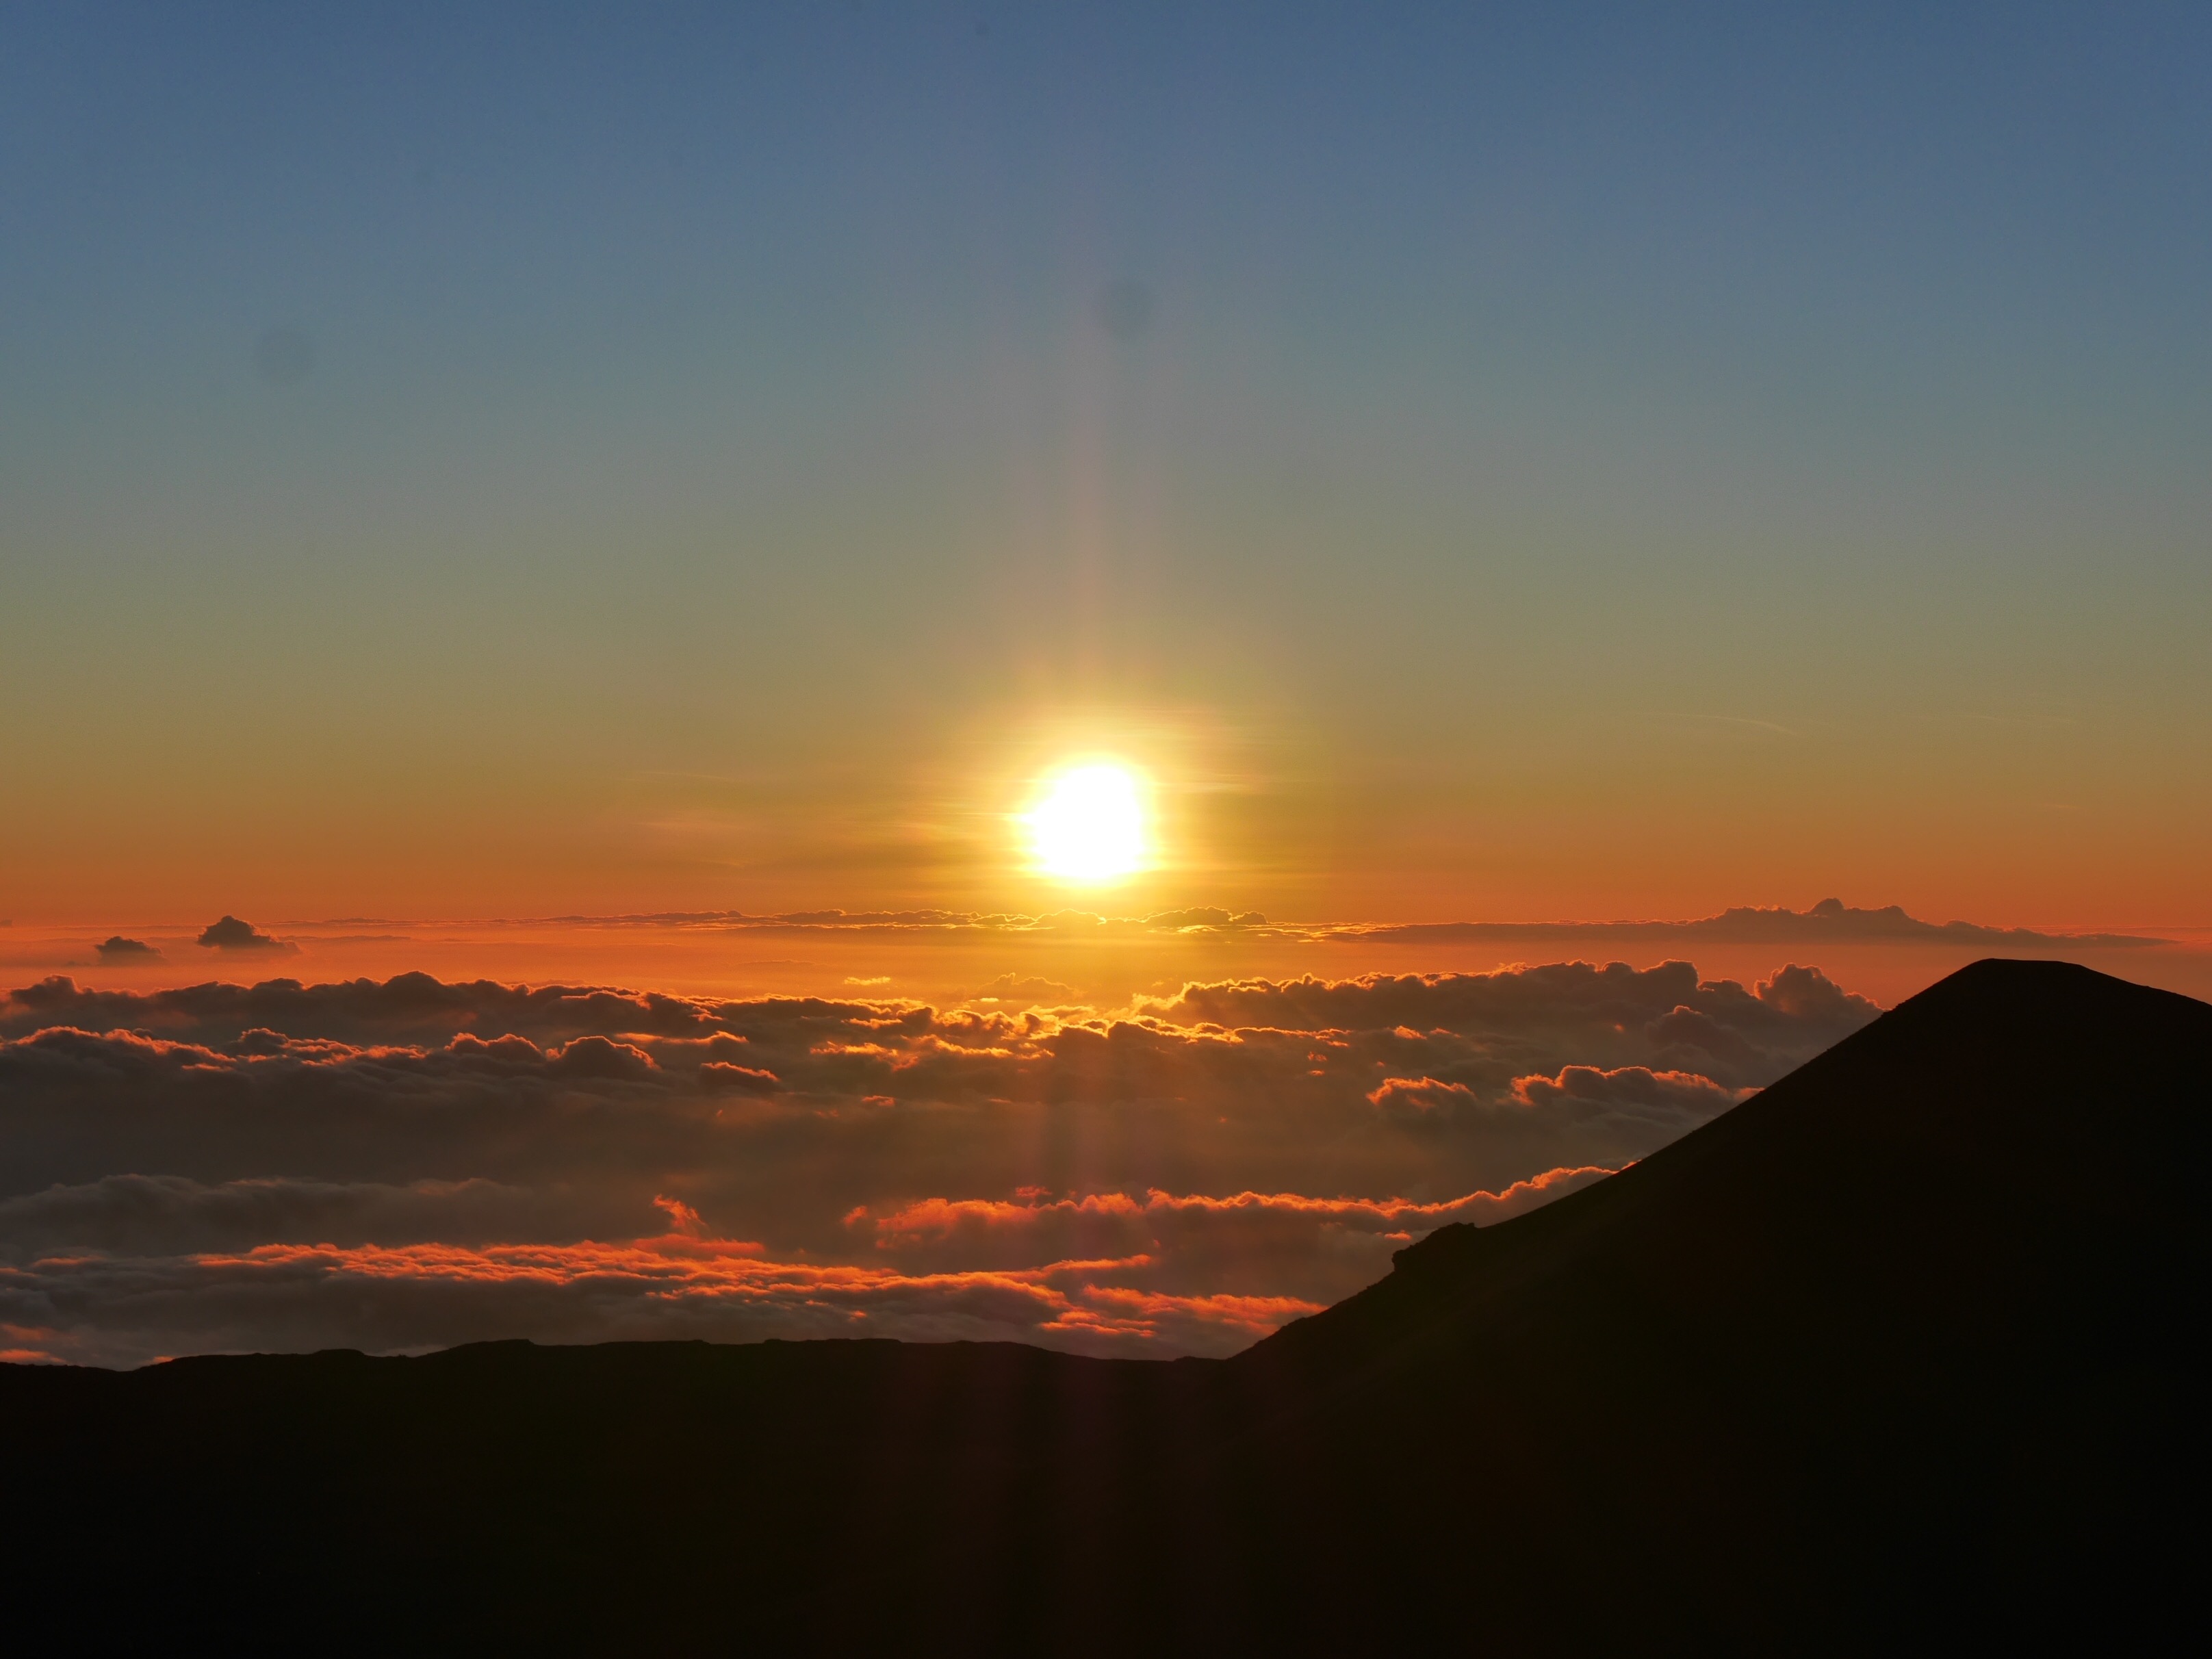 Sunset from the Mauna Kea summit